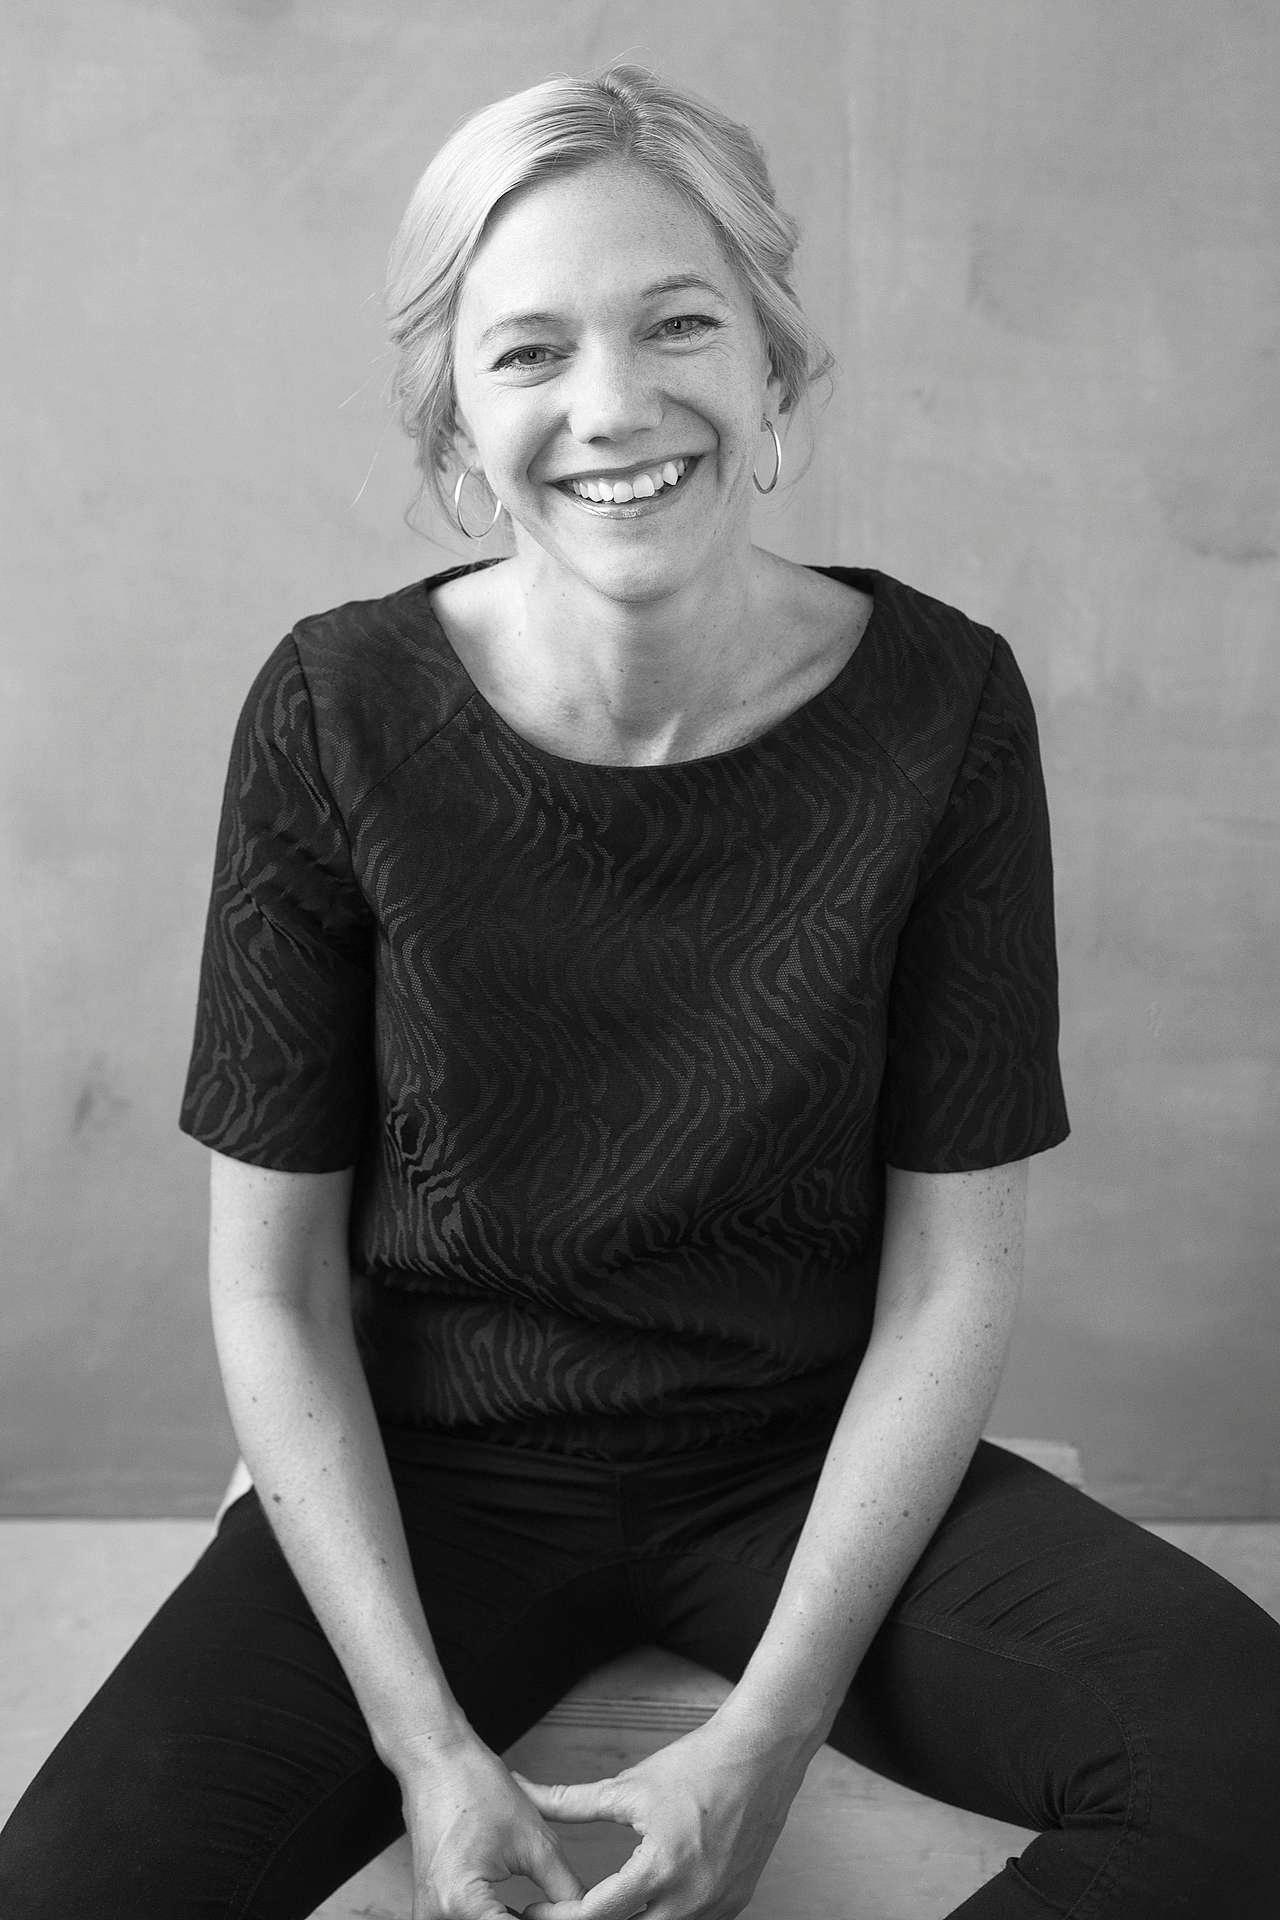 Forfatter Maja Lunde har mange års erfaring som manusforfatter for TV og som barne- og ungdomsforfatter.